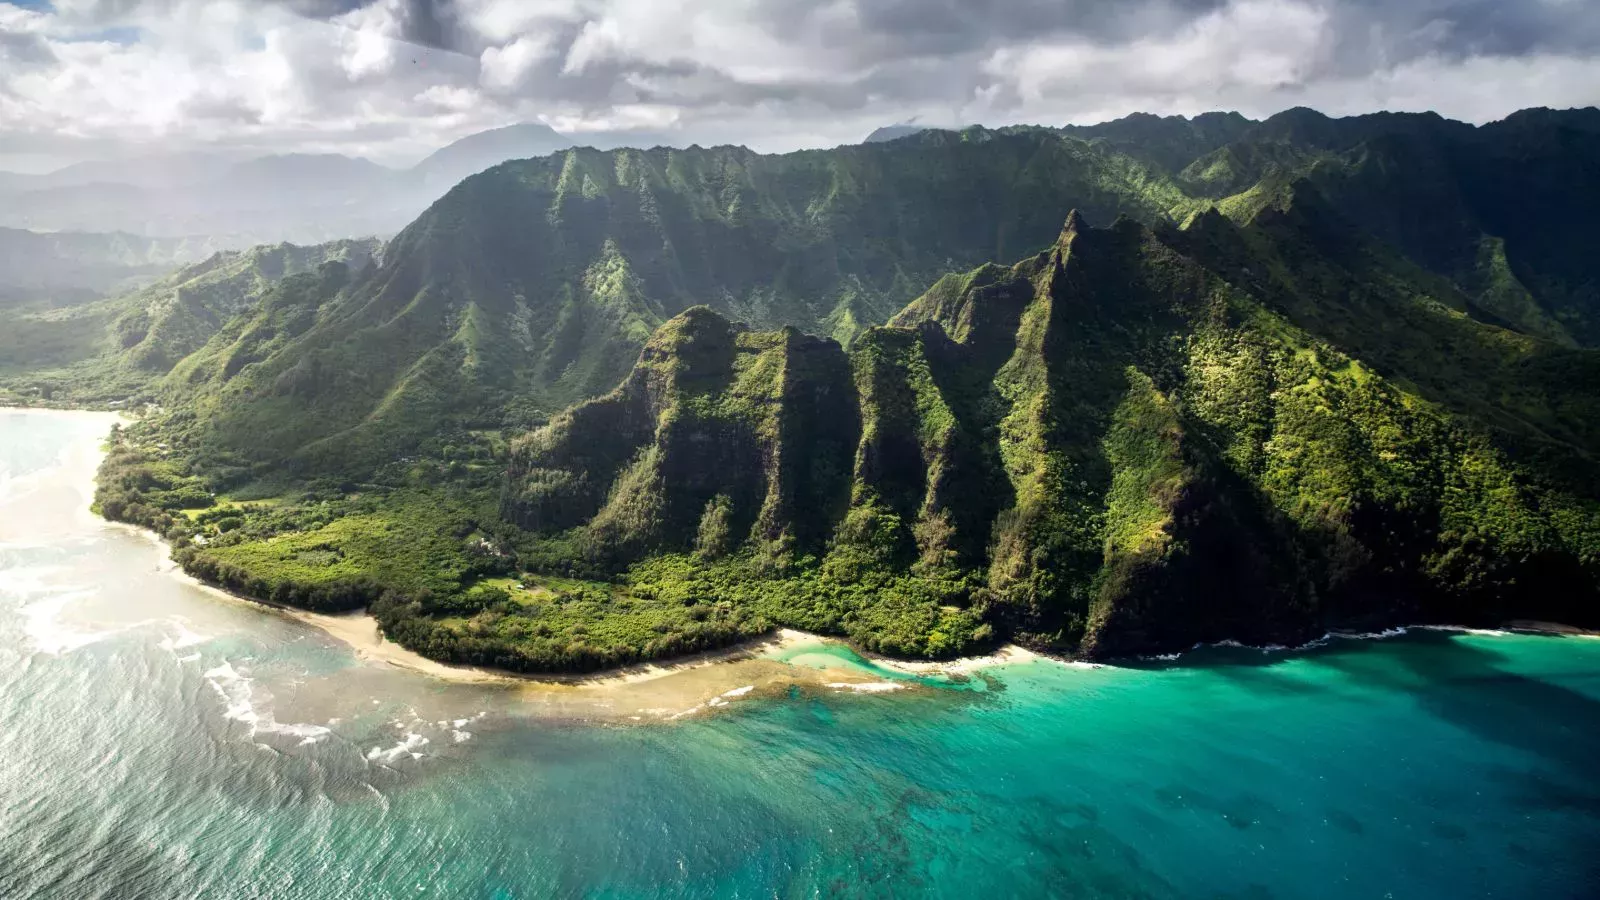 El espíritu hawaiano de "Aloha" siempre brilla.